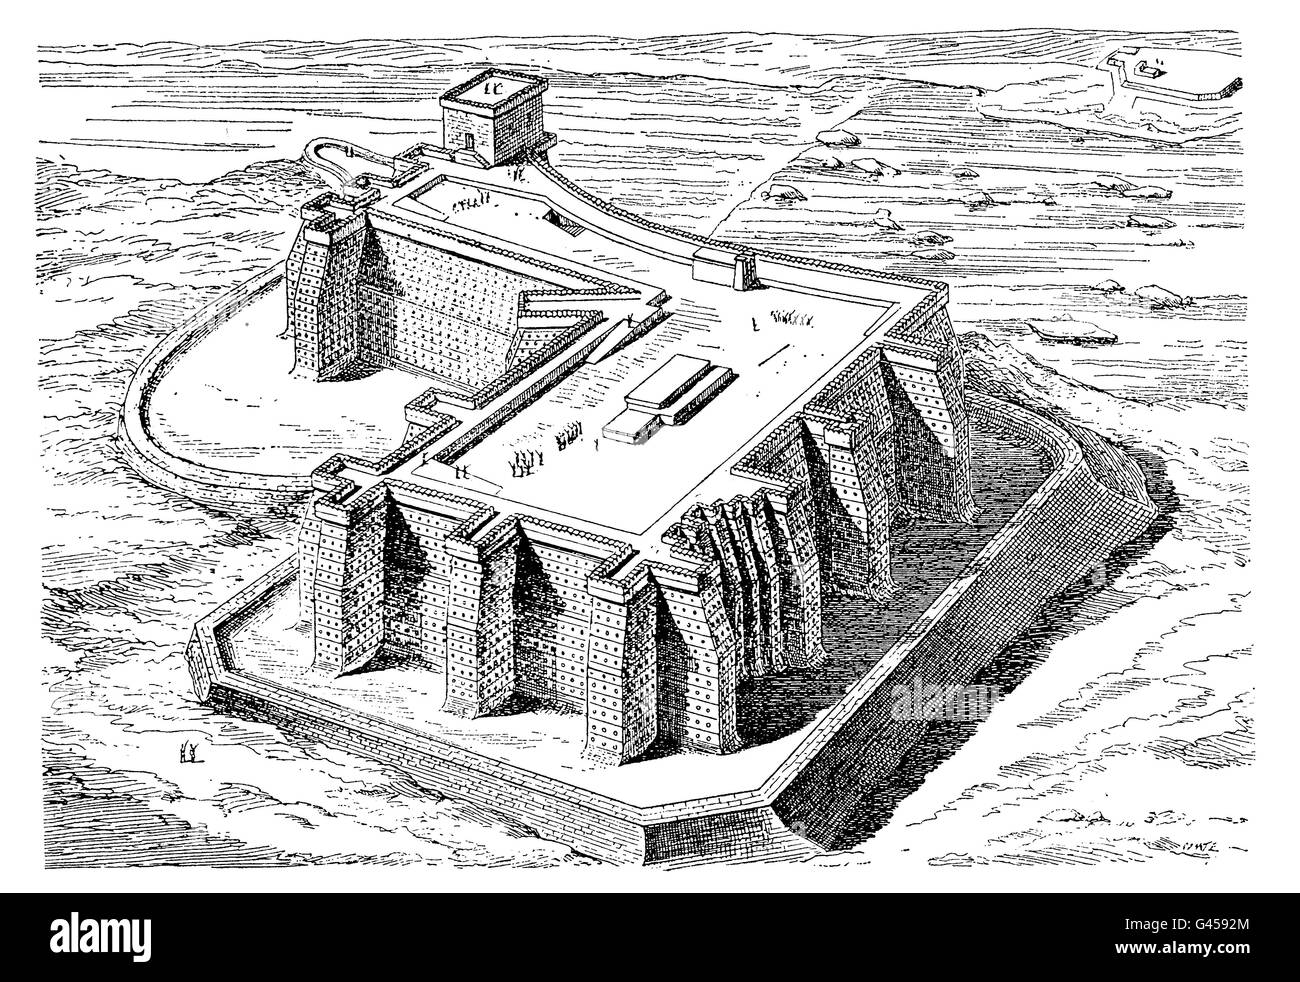 Semna forteresse a été construit par la dynastie égyptienne pharaon Sesostris III XII à la deuxième cataracte du Nil pour défendre la terre de l'invasion de l'extérieur Banque D'Images